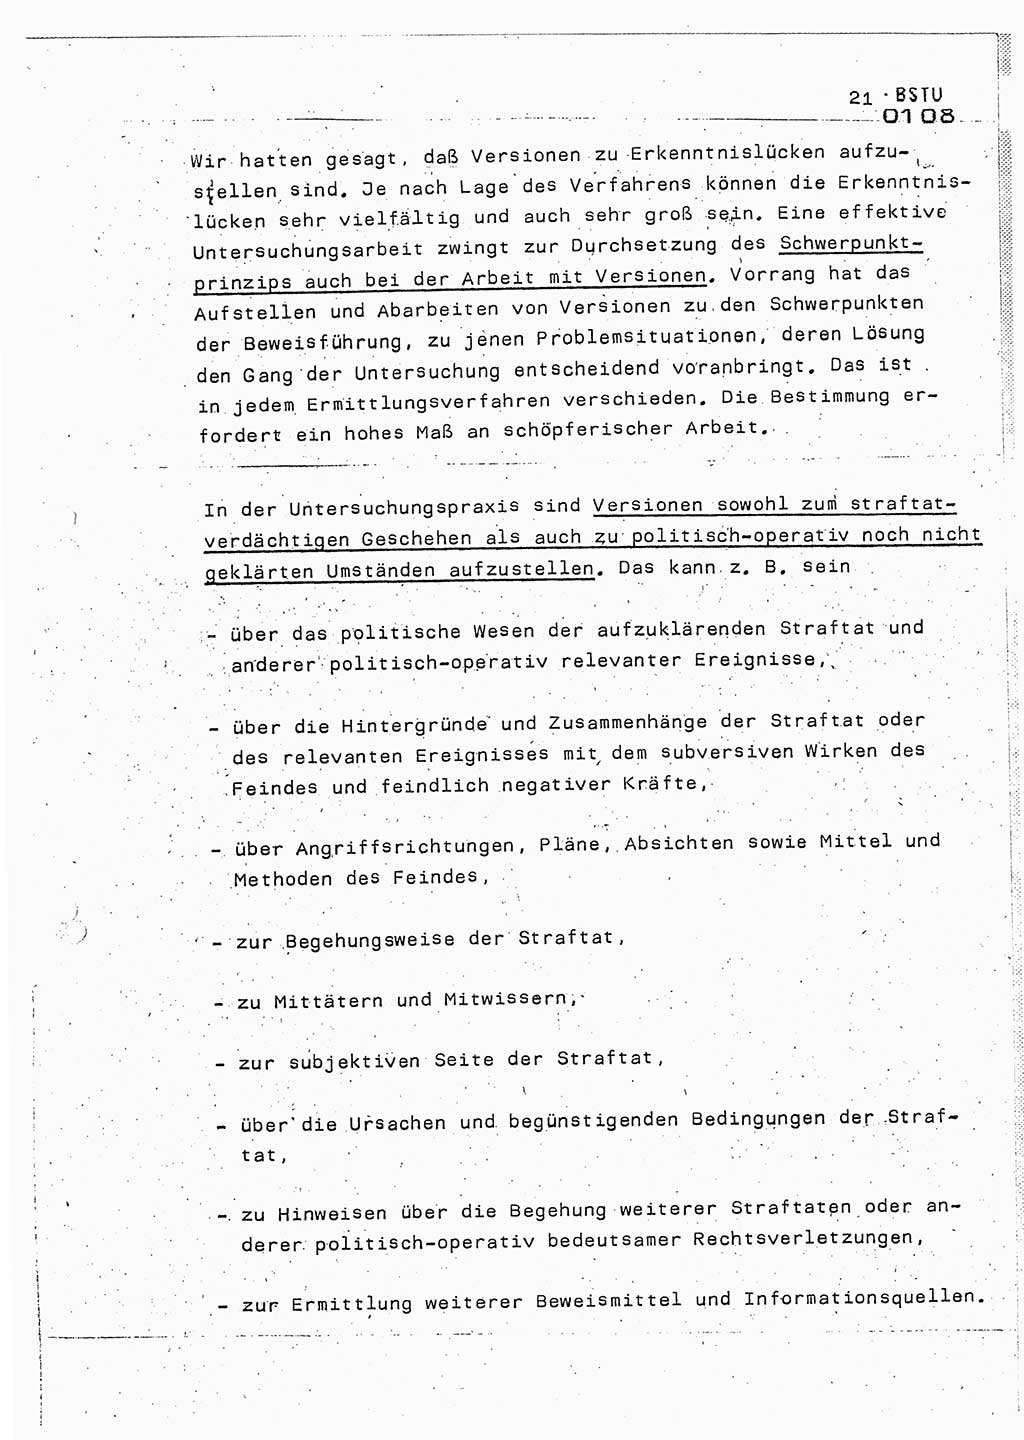 Lektion Ministerium für Staatssicherheit (MfS) [Deutsche Demokratische Republik (DDR)], Hauptabteilung (HA) Ⅸ, Berlin 1987, Seite 21 (Lekt. Pln. Bearb. EV MfS DDR HA Ⅸ /87 1987, S. 21)